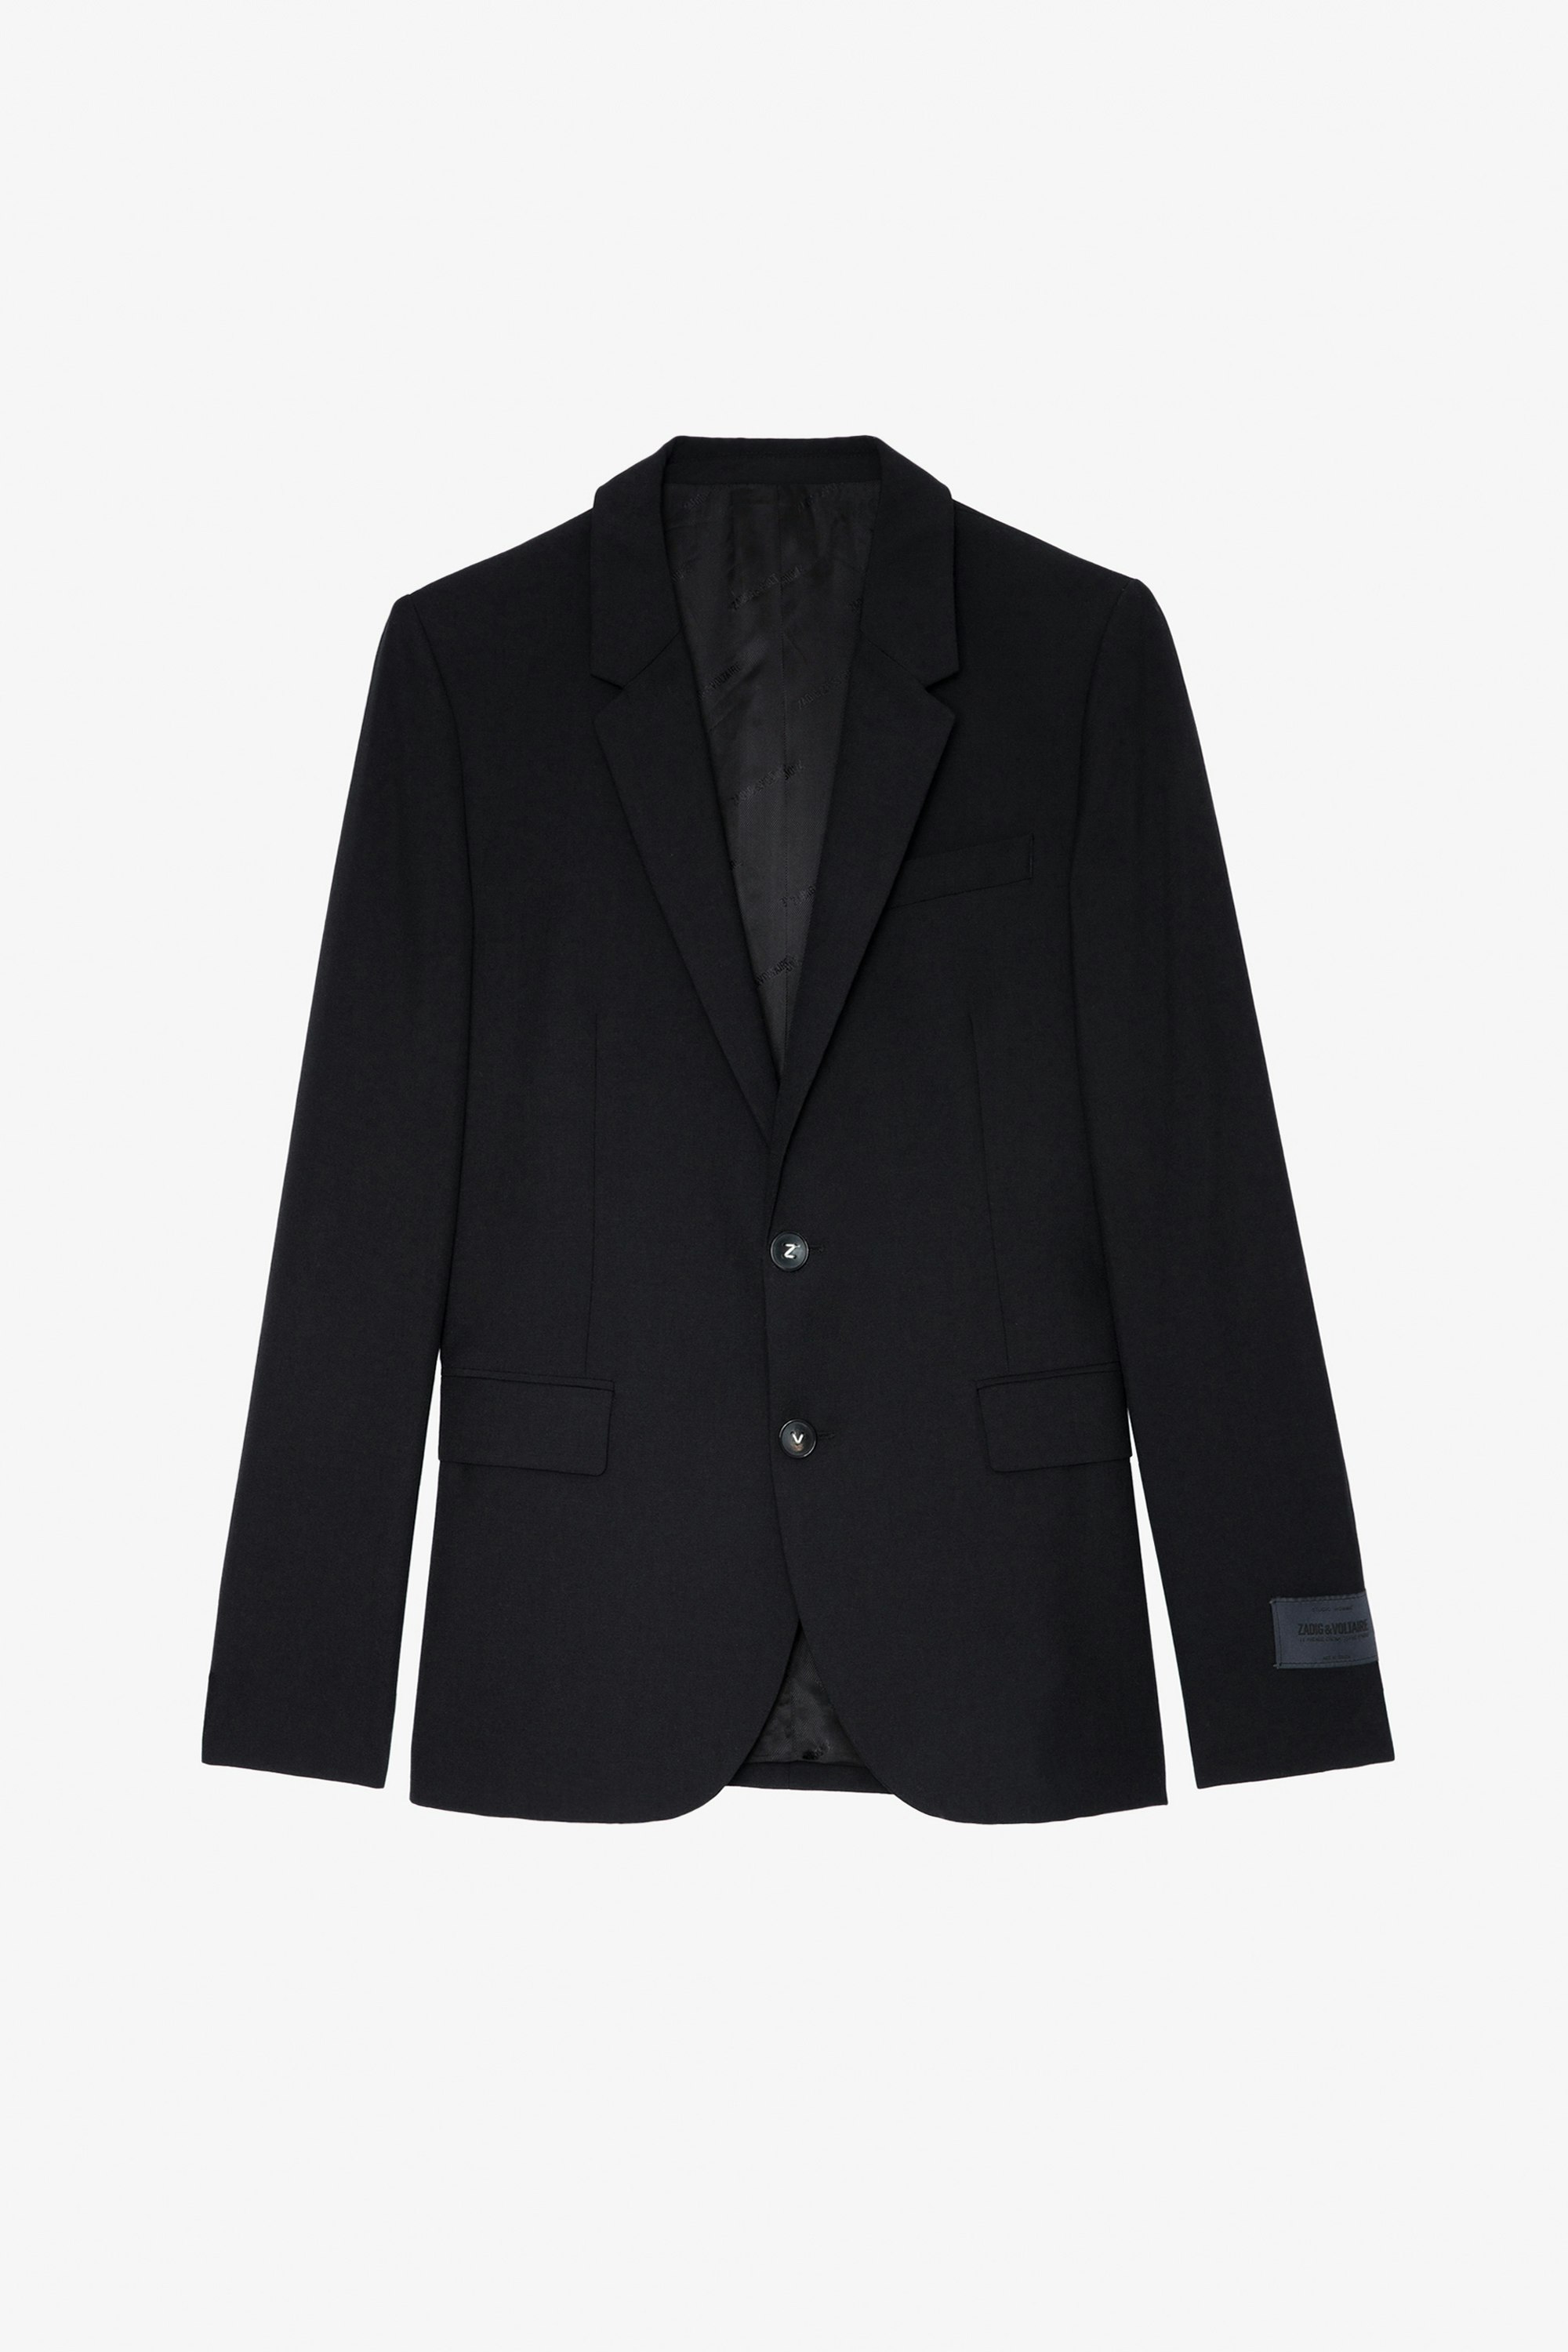 Blazer Viks - Veste blazer en laine noire ornée d'une étiquette tailoring sur la manche gauche unisexe.